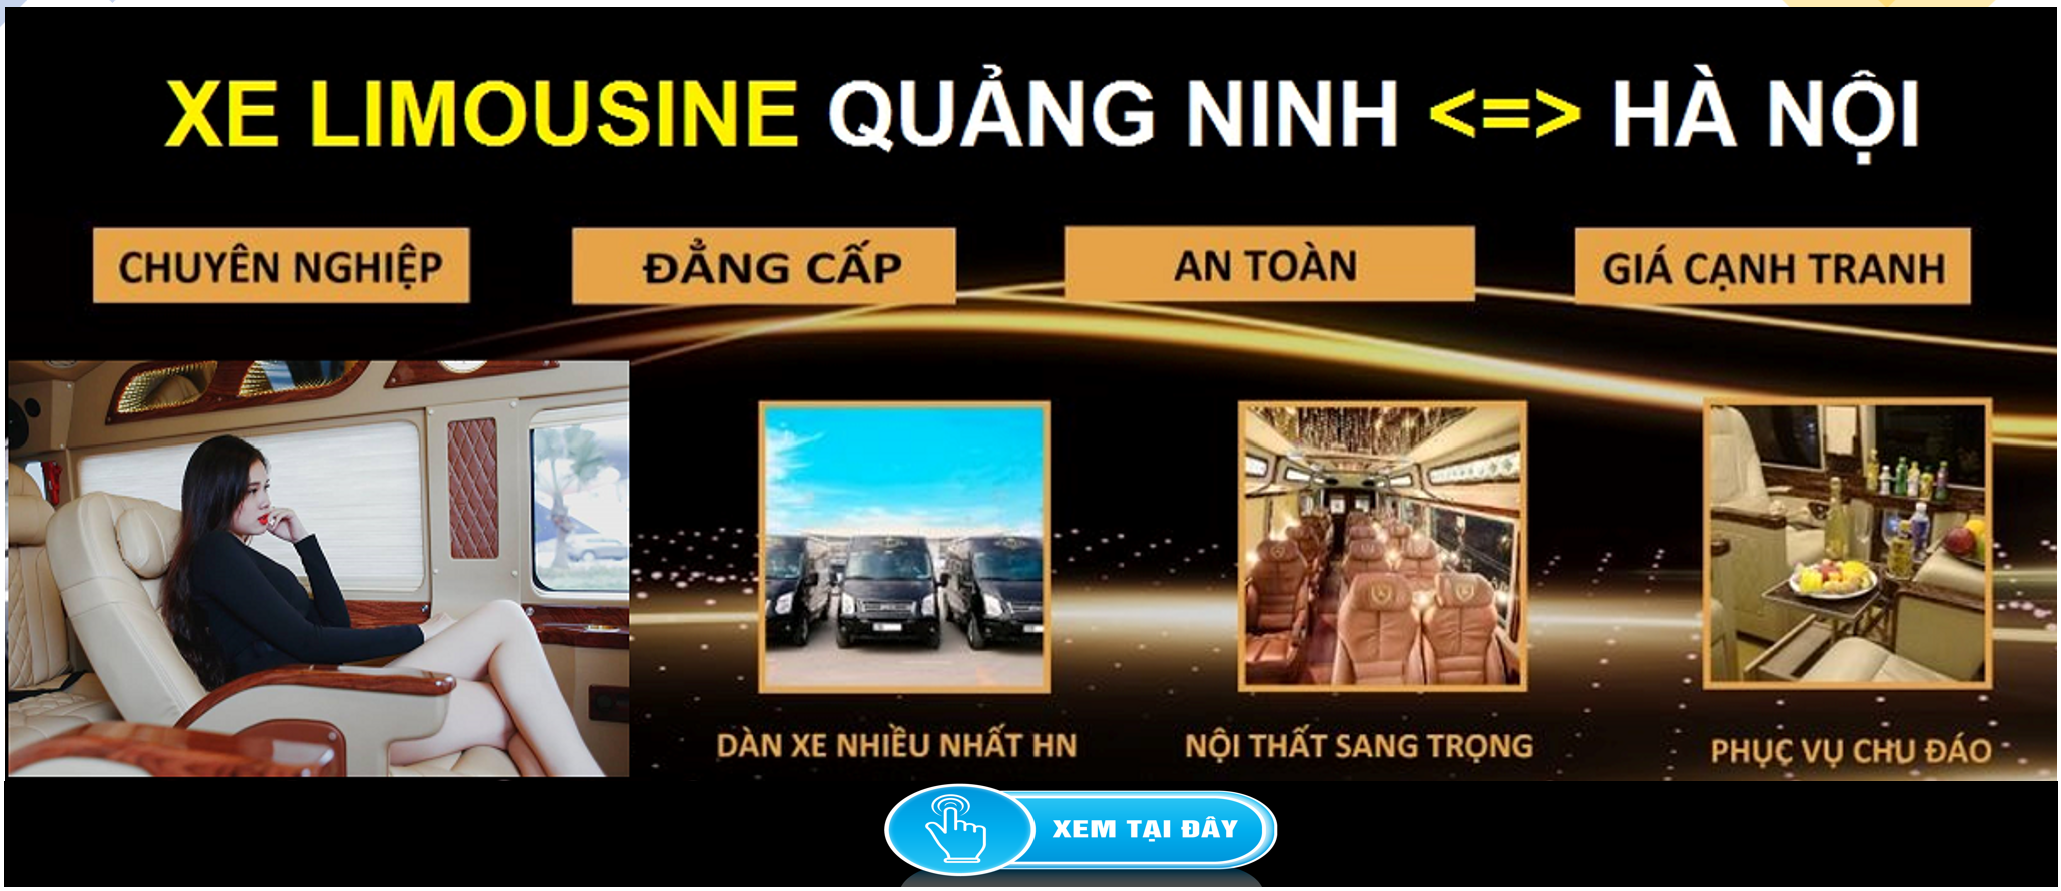 Xe Limousine Ha Noi Quang Ninh dua don tai nha 1d - Thời gian làm việc và Địa chỉ các trung tâm đăng kiểm xe cơ giới, xe ô tô tại TP Hồ Chí Minh